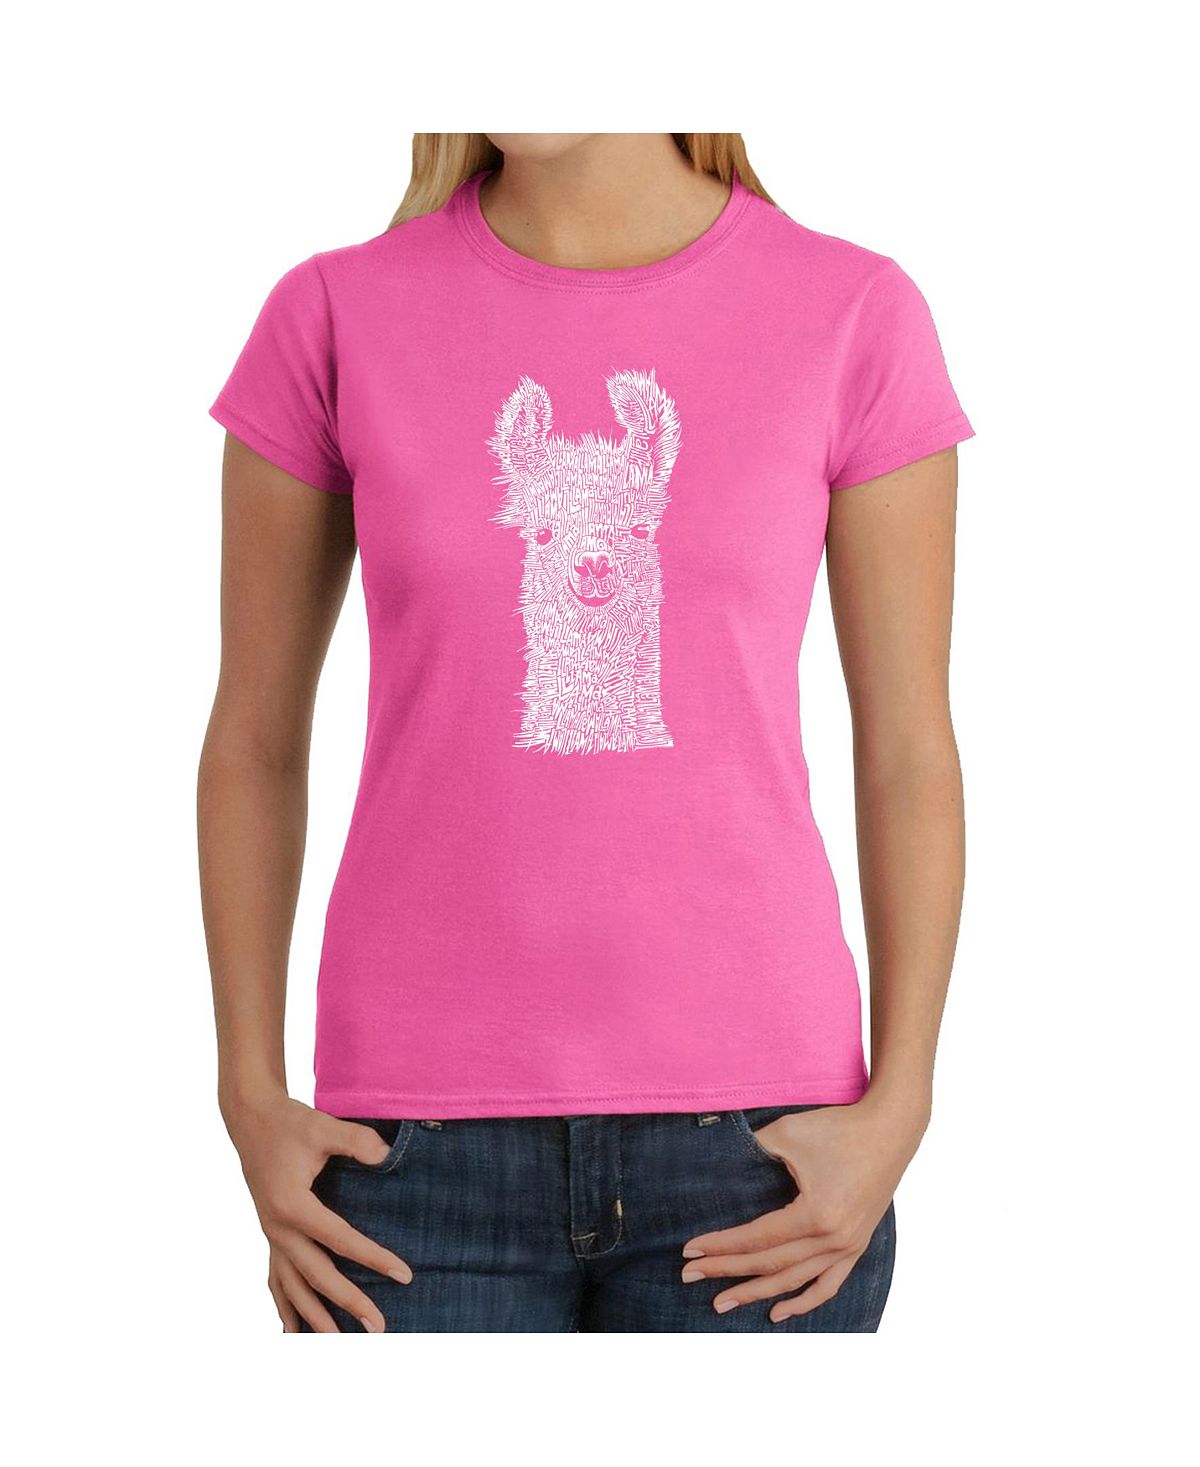 Женская футболка word art - лама LA Pop Art, розовый